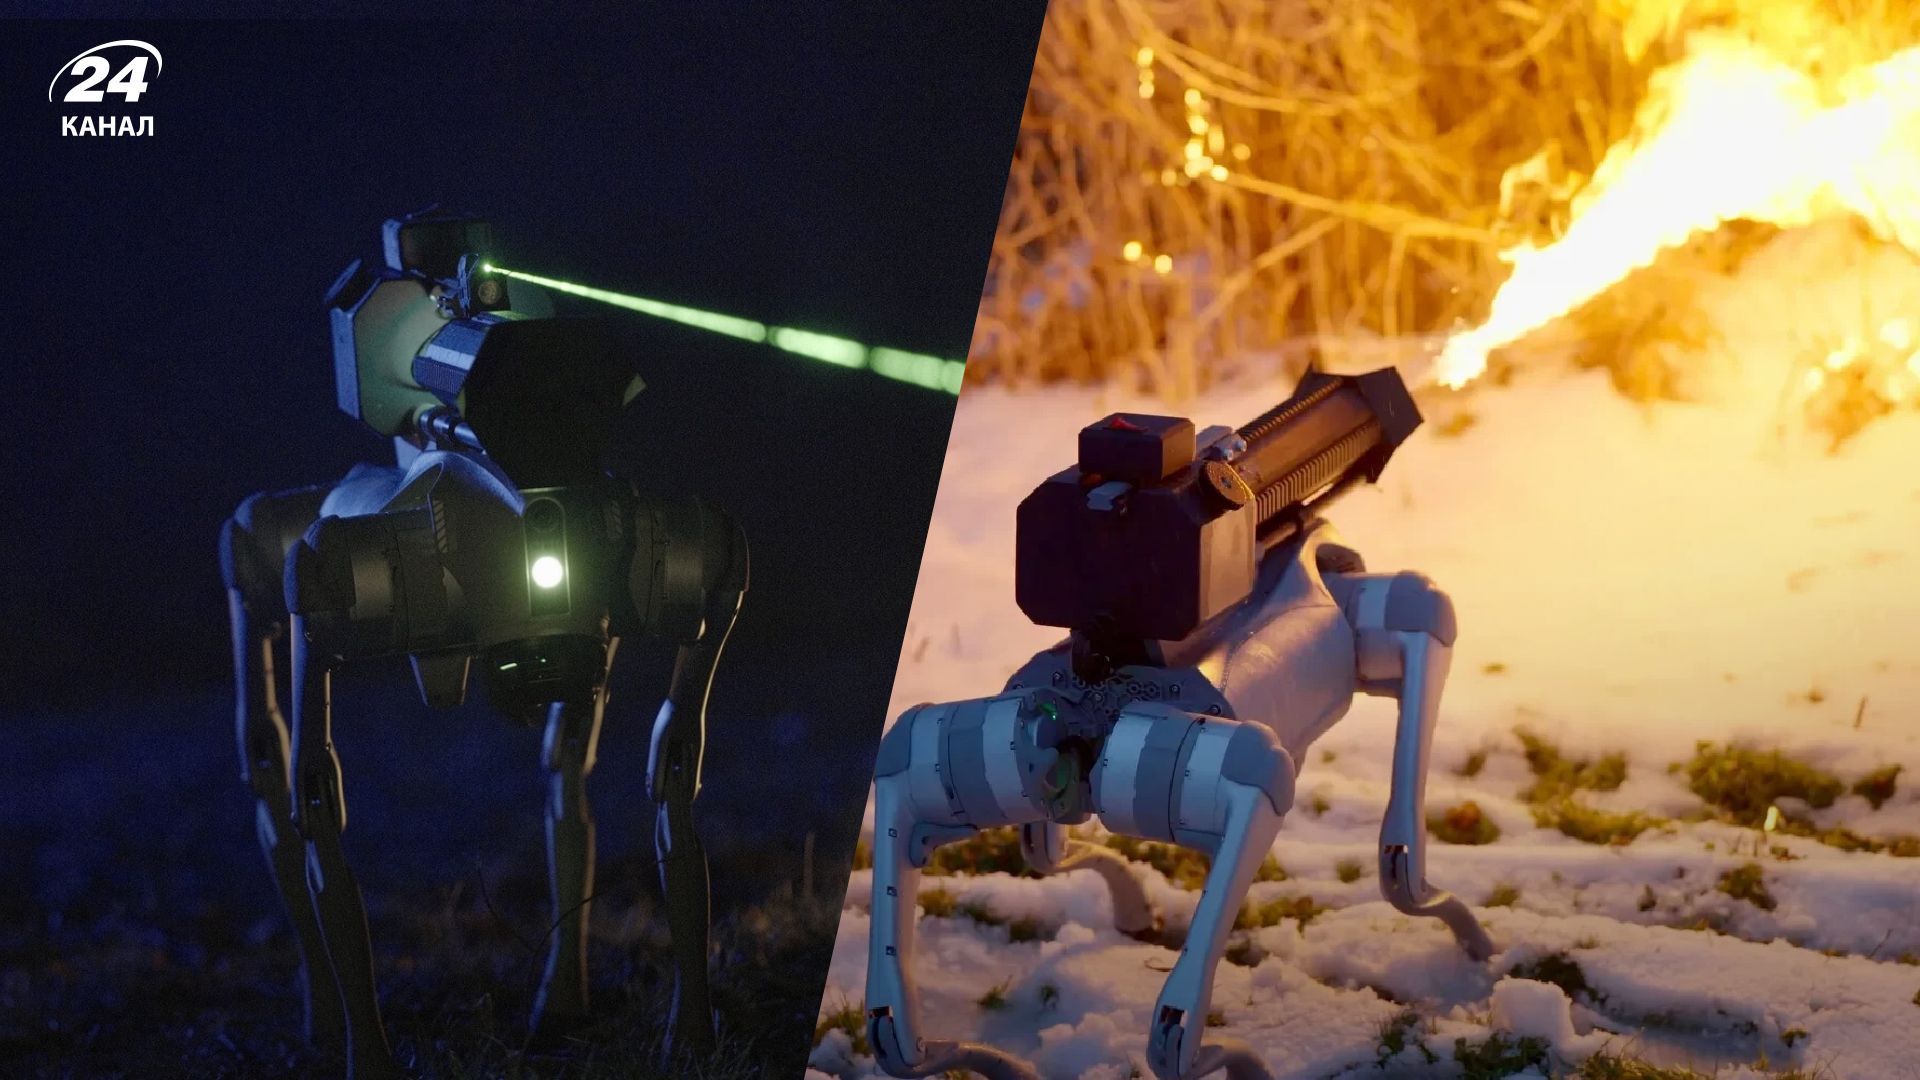 Робот-собака Термонатор, метающий огонь, продается в США - видео и фото - Men